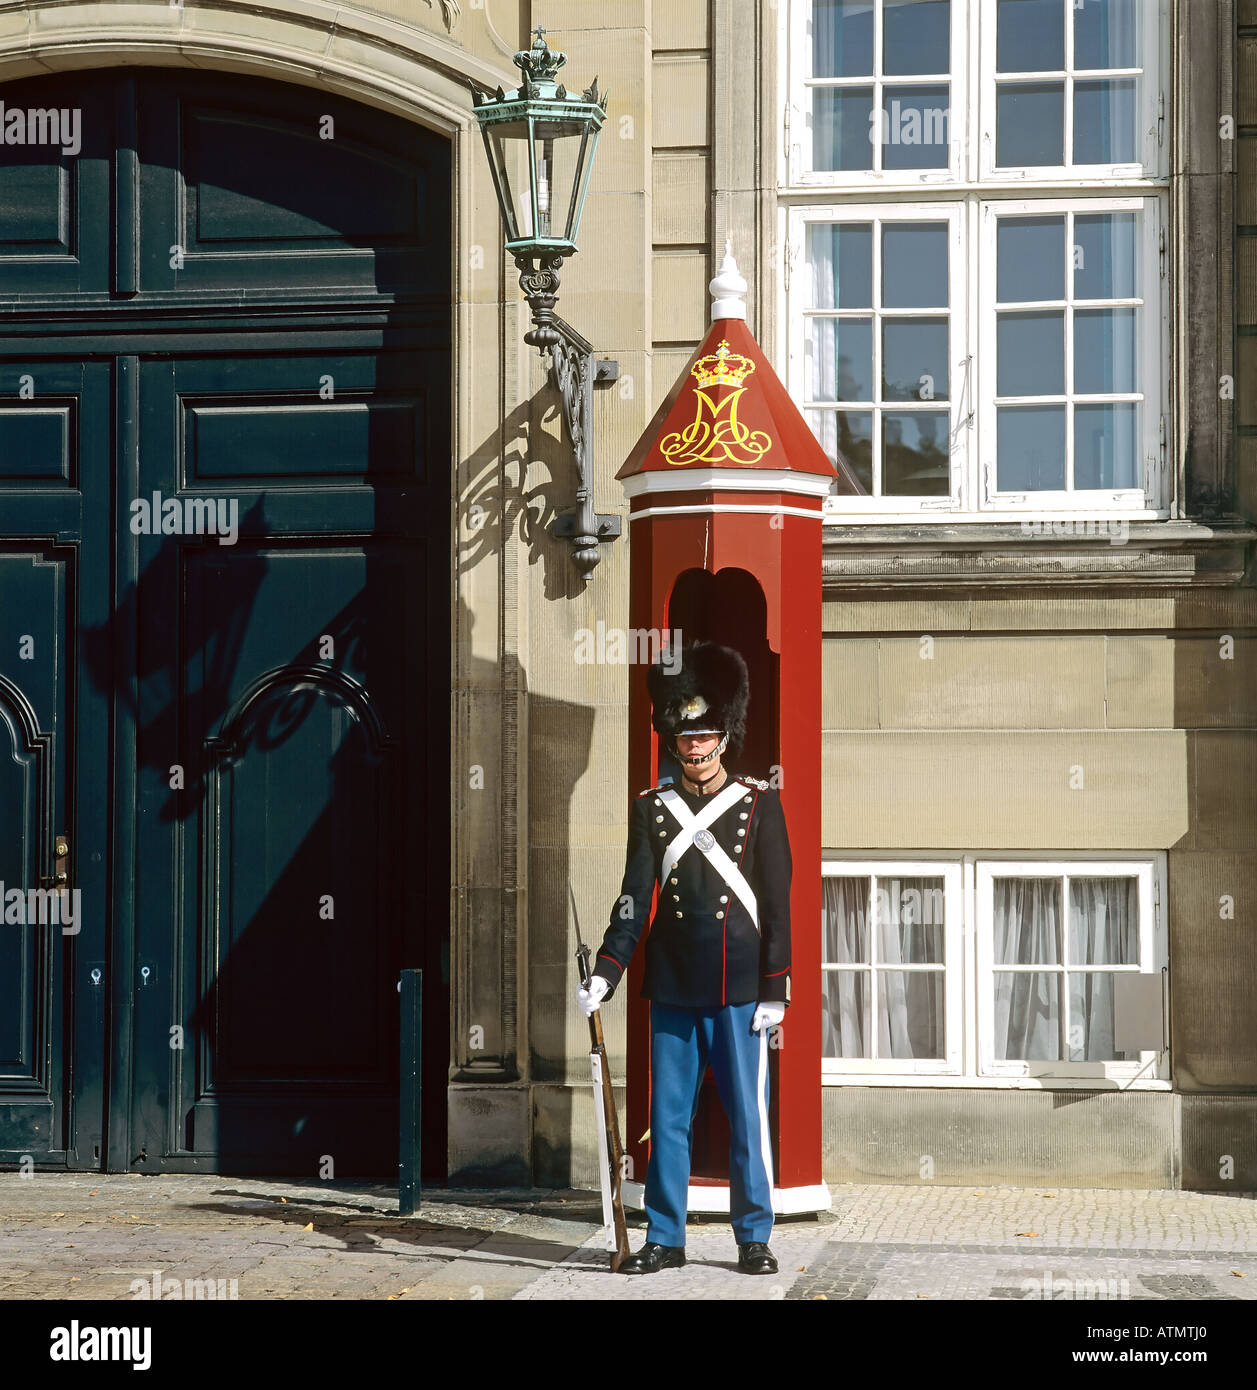 Royal life guard at sentry box, Amalienborg palace, Copenhagen, Denmark Stock Photo